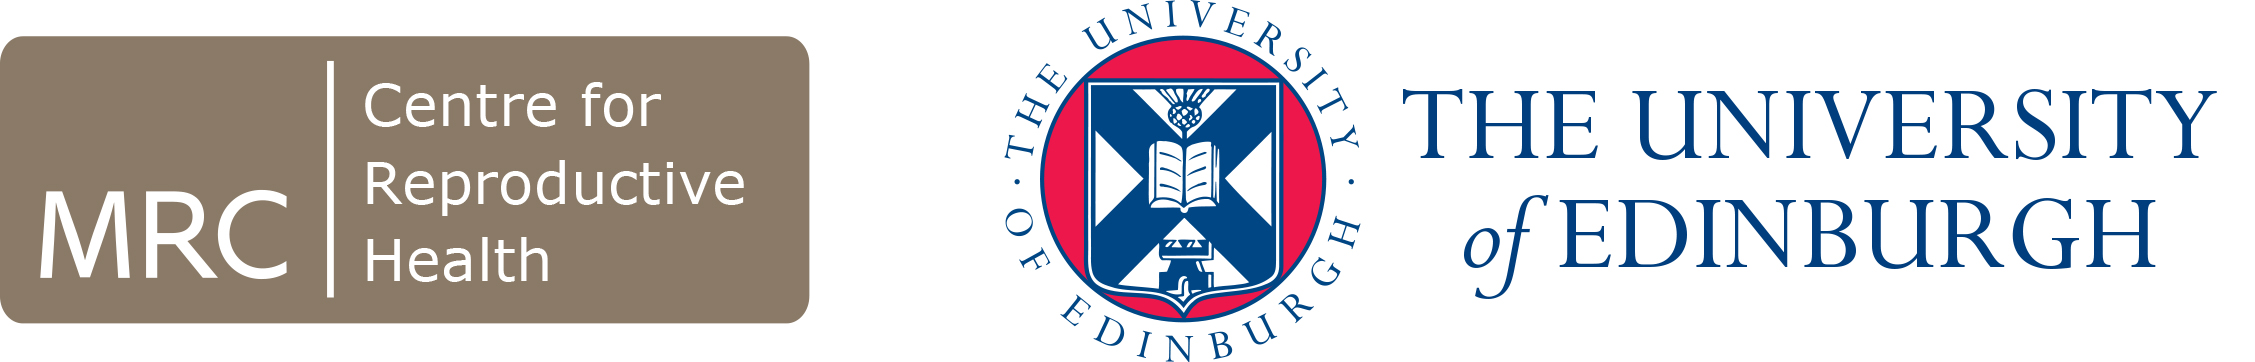 MRC CRH University of Edinburgh logo